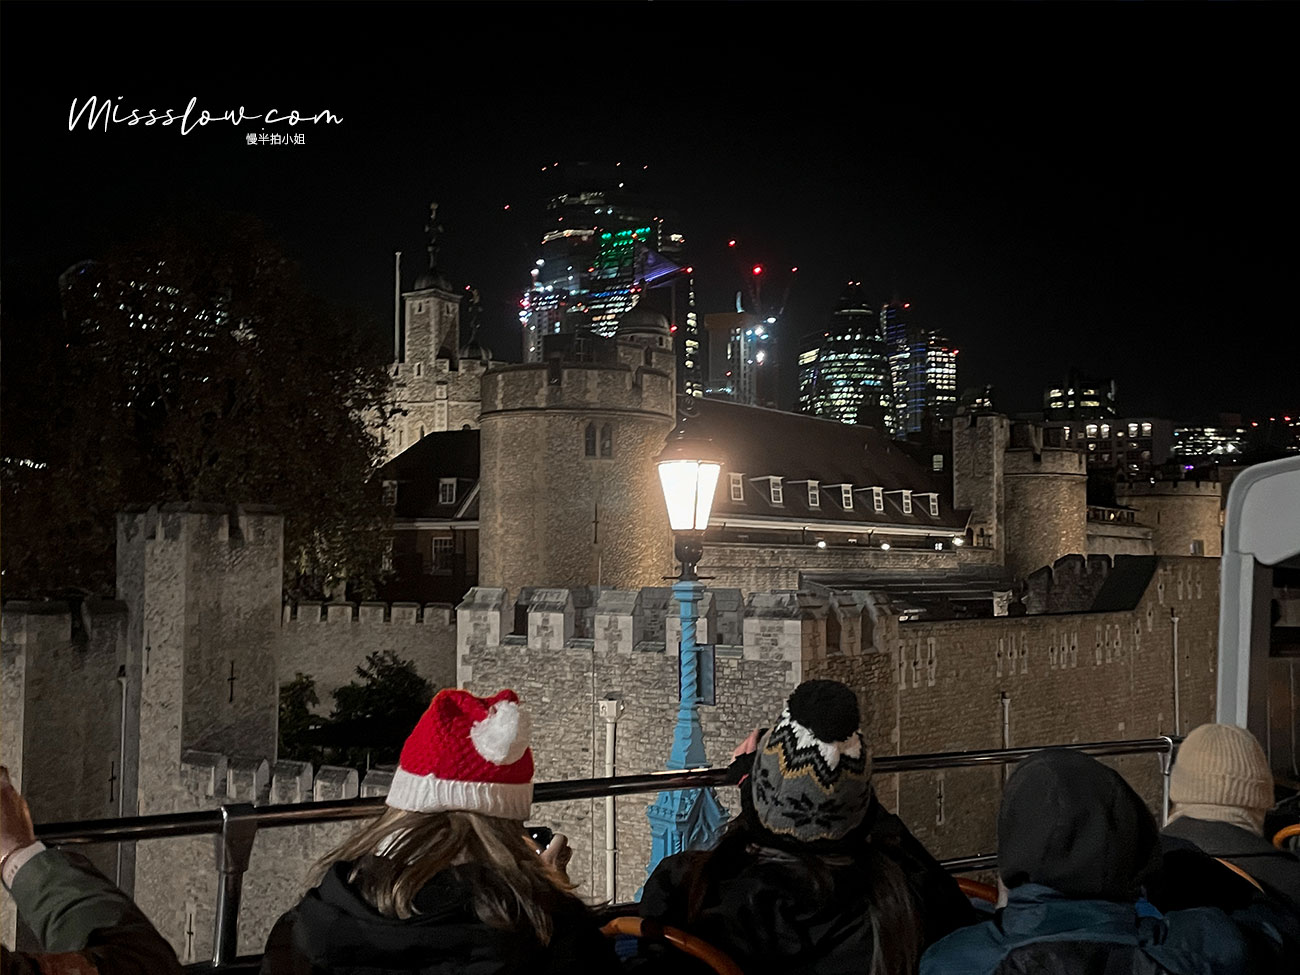 倫敦塔London Tower
點了銀白燈的倫敦塔變的夢幻了，晚上這樣遠遠的看外觀很好